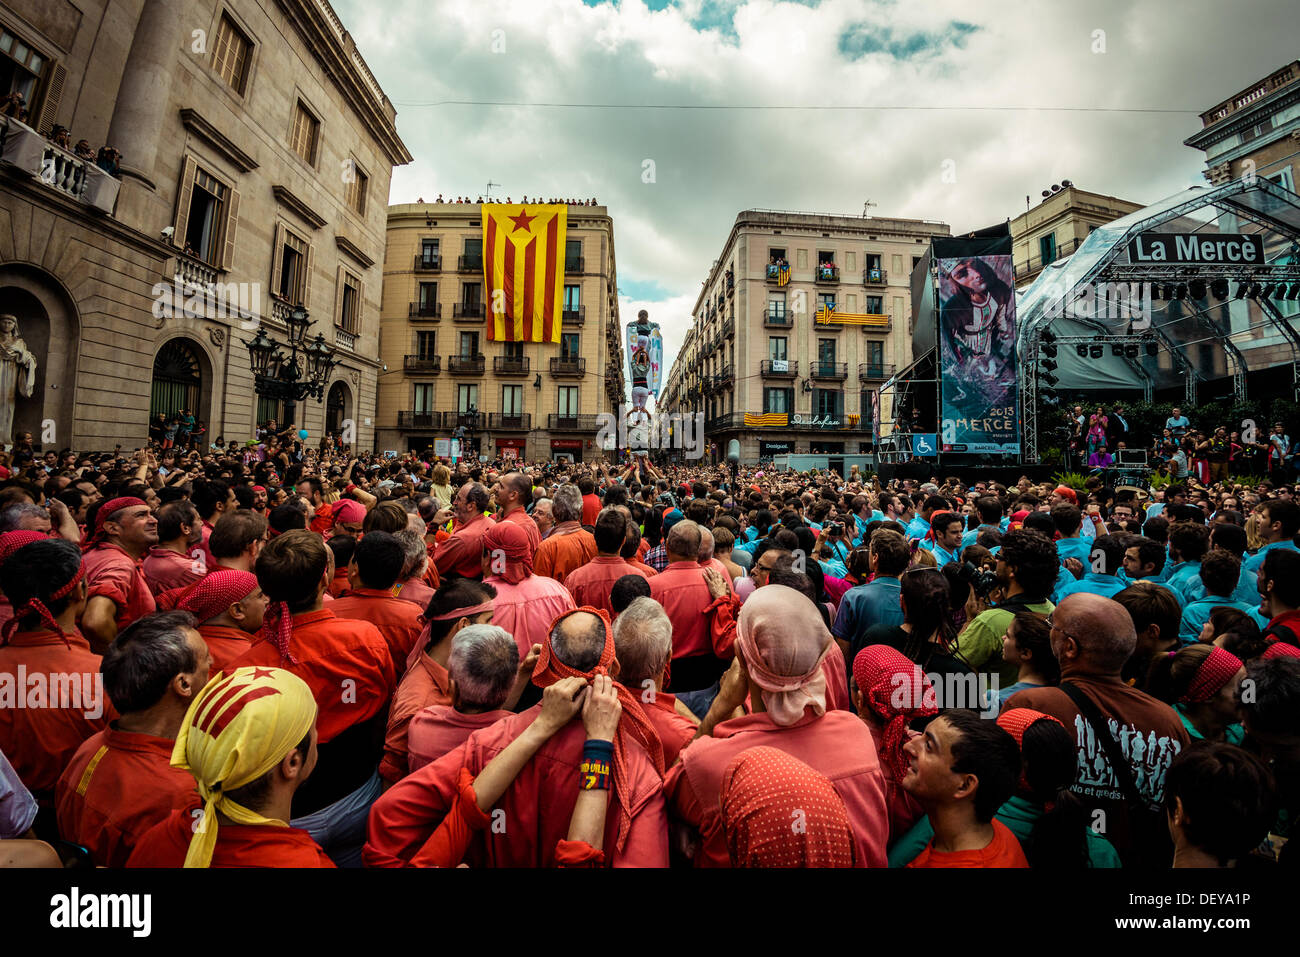 Barcelone, Espagne. Sep 24, 2013 : l'Castellers de Sans construire leur inauguration de pilier en face de l'hôtel de ville de Barcelone au cours de la ville, festival de la Merce, 2013 © matthi/Alamy Live News Banque D'Images